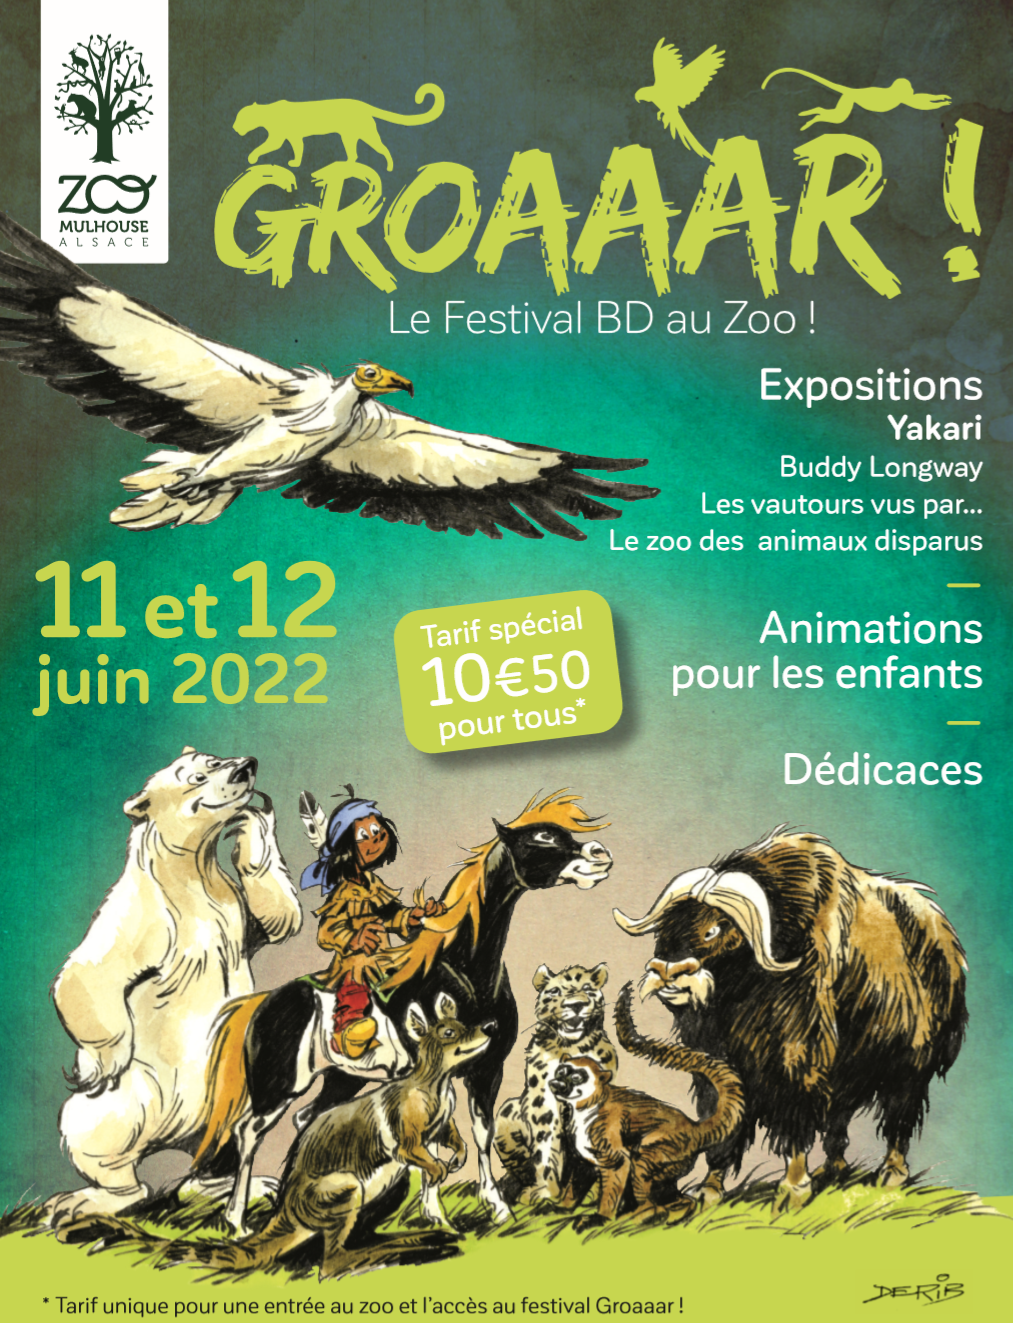 Festival Groaaar ! 28 auteurs présents à Mulhouse, dont Joël Jurion (Klaw, Masques)